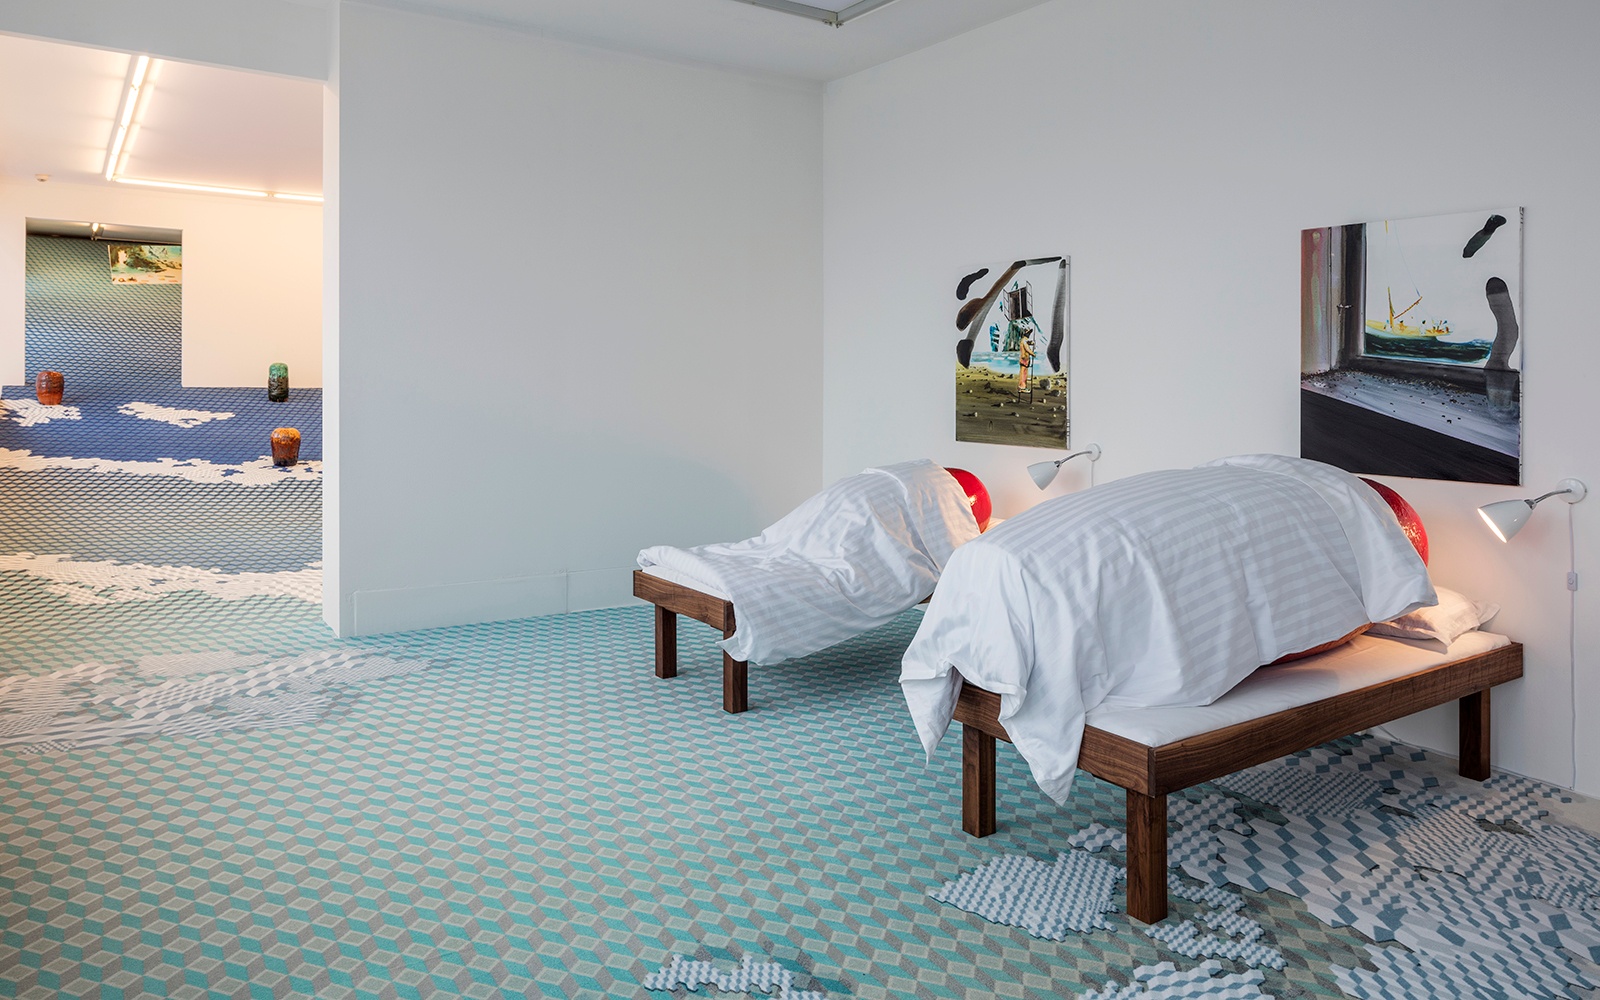 The Blue Bedroom by John Kørner